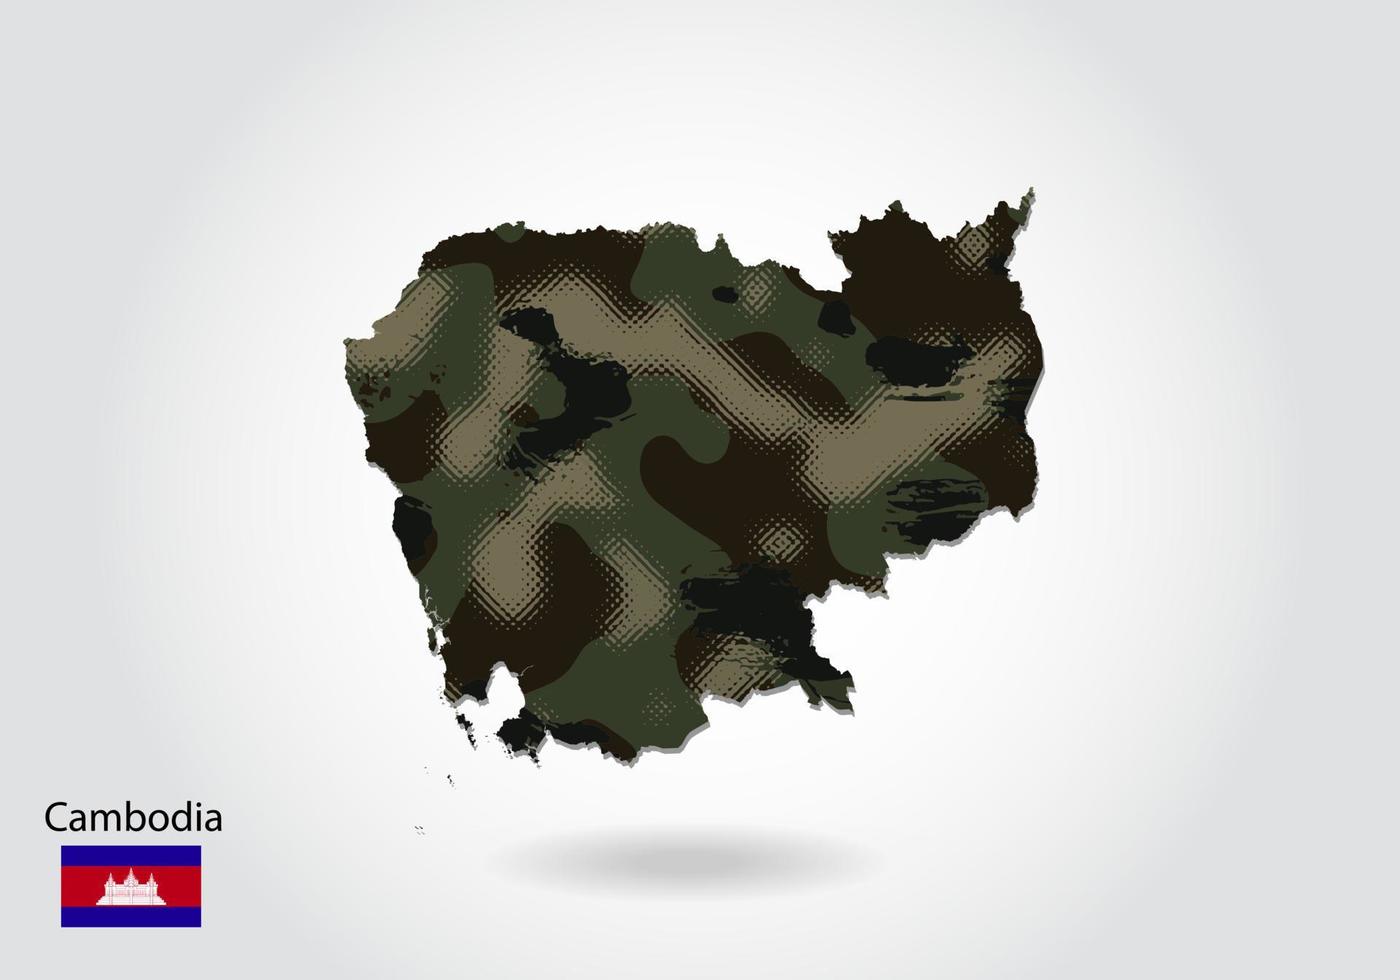 kambodjakarta med kamouflagemönster, skog - grön struktur i kartan. militärt koncept för armé, soldat och krig. vapensköld, flagga. vektor